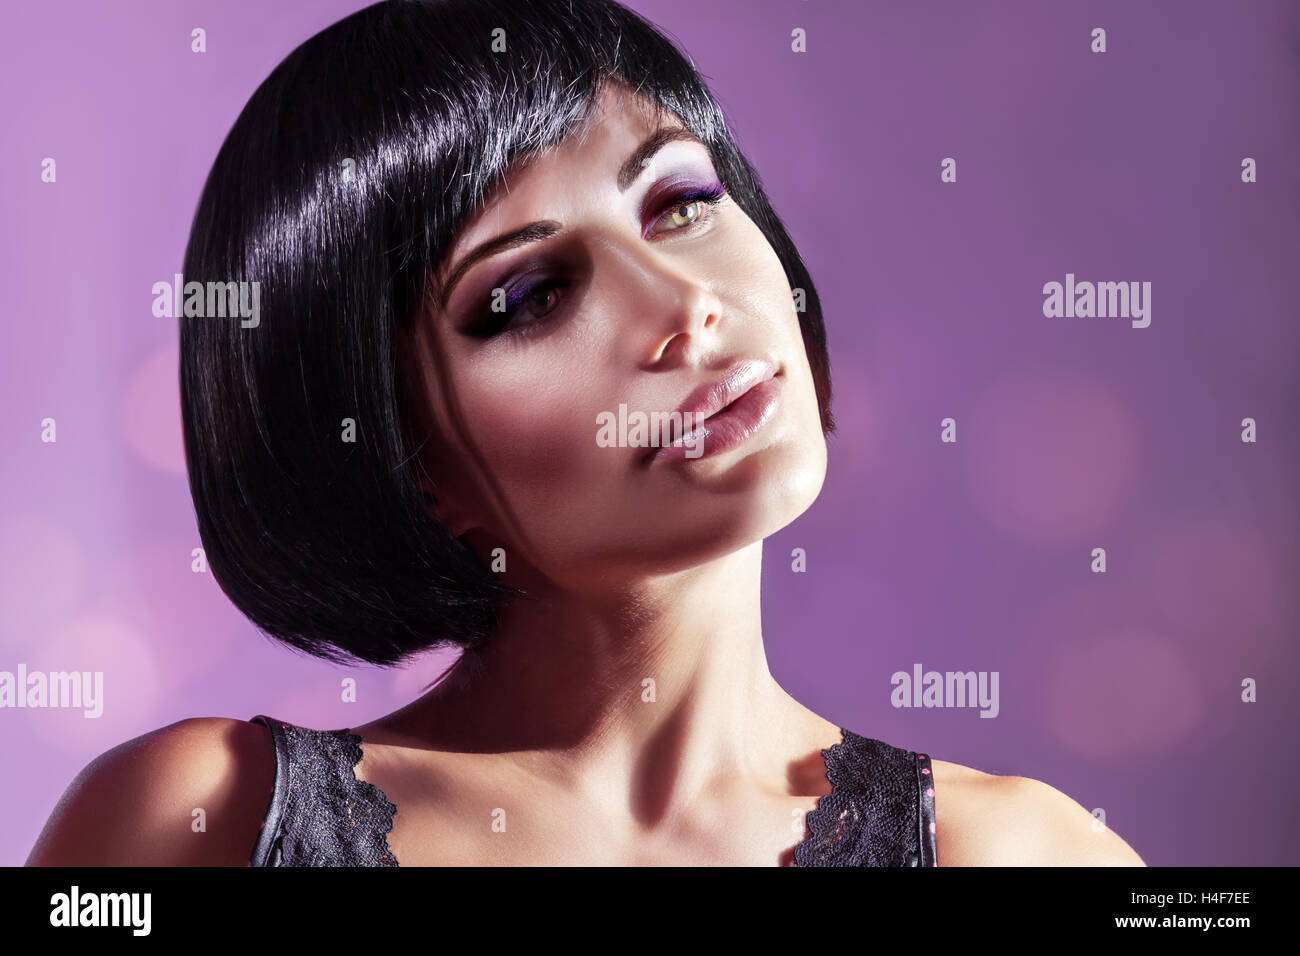 Retrato de una joven y bella mujer de más fondo púrpura, modelo atractivo con un magnífico bob cortes de pelo y maquillaje brillante Foto de stock